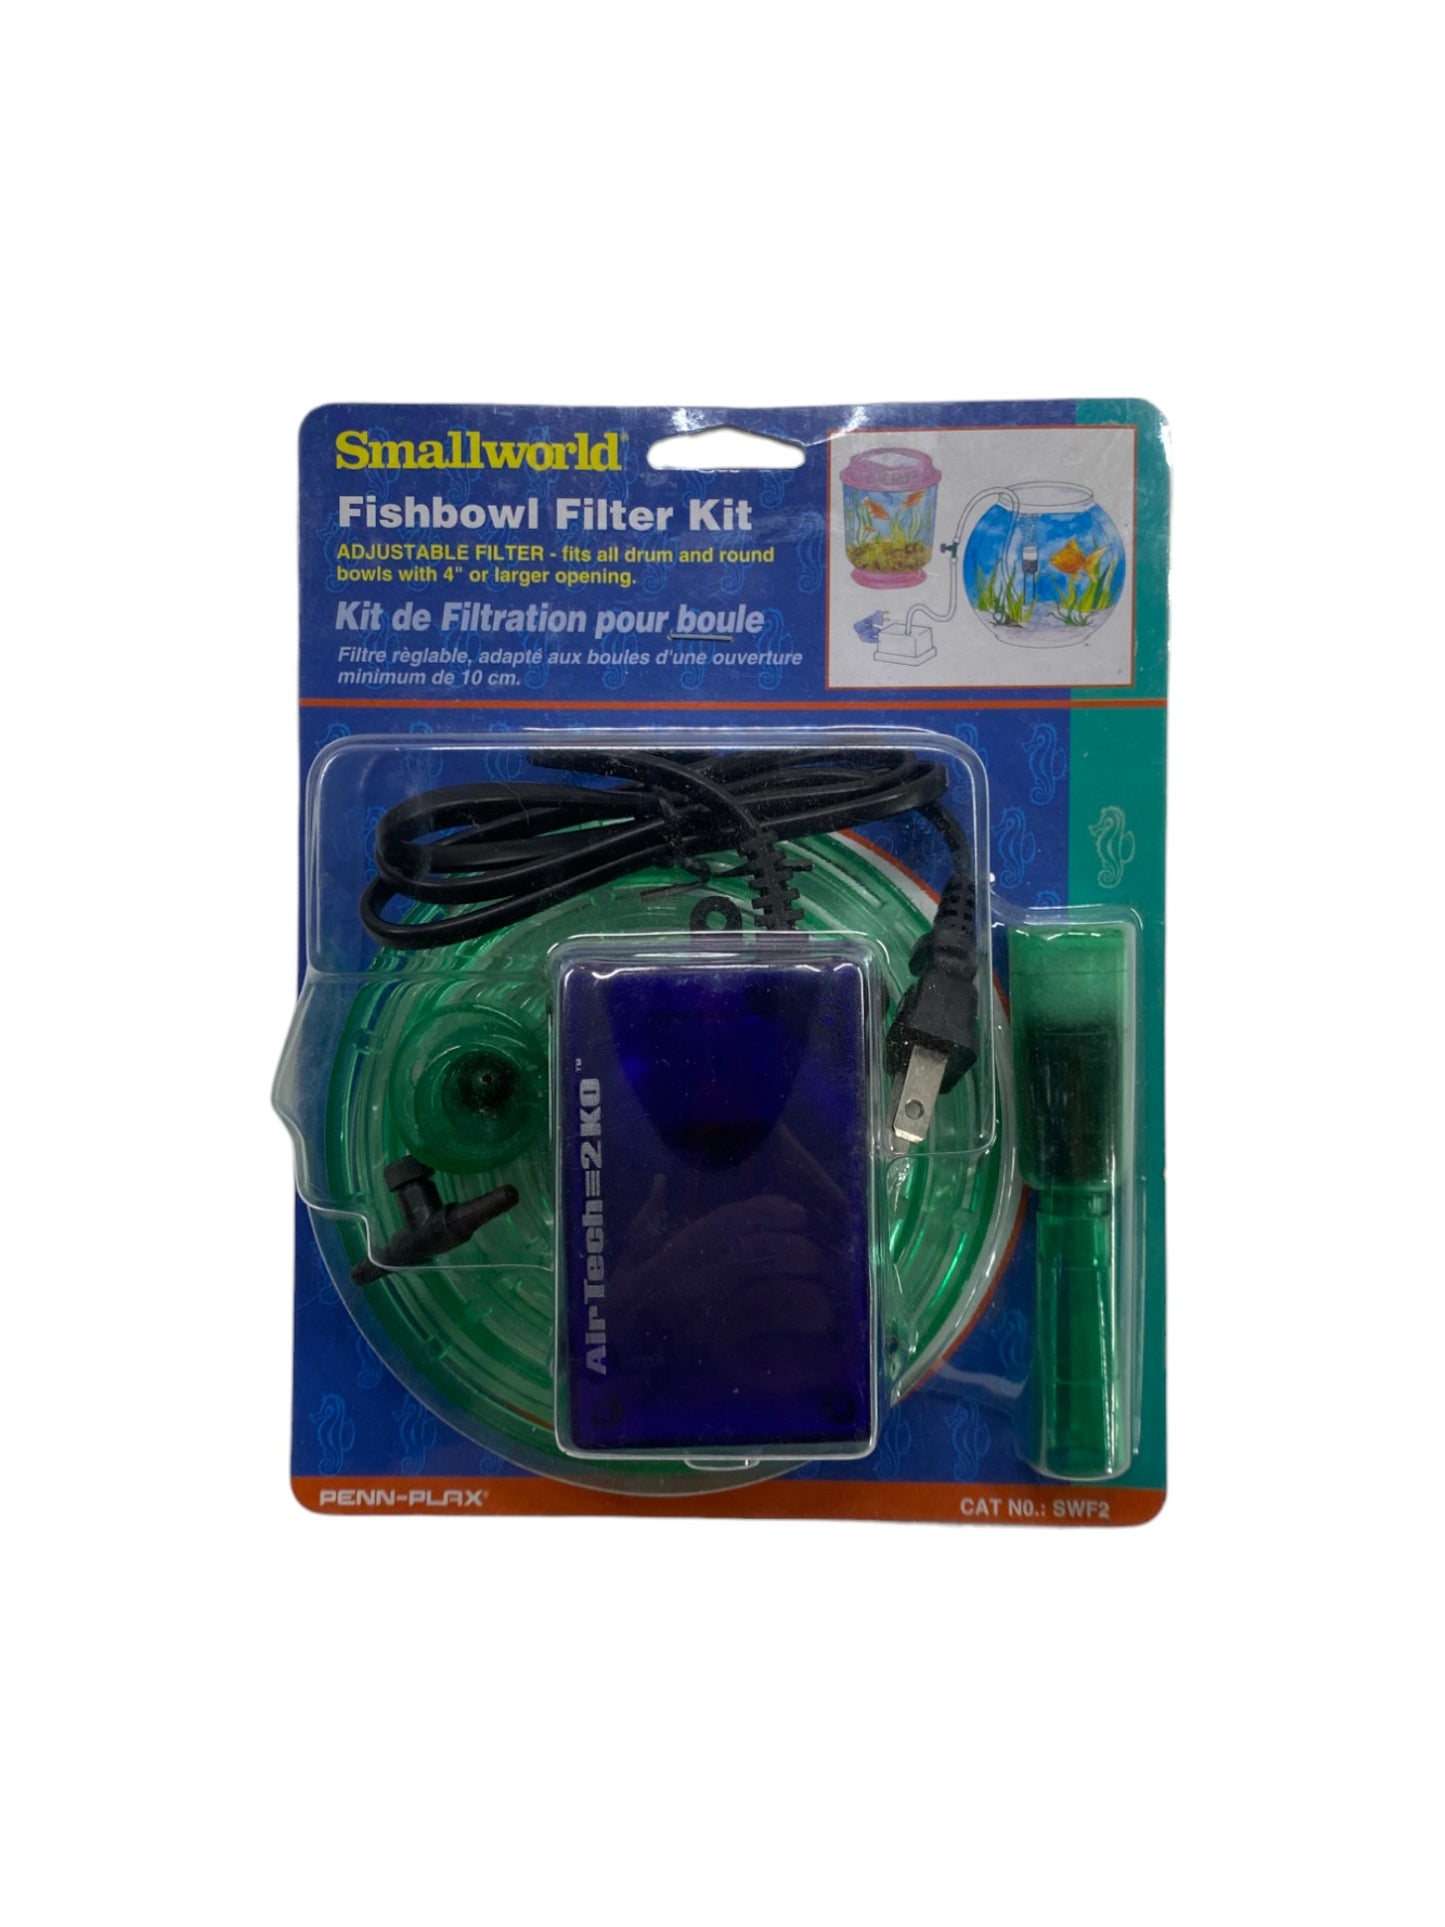 Penn Plax Small World Fishbowl Filter Kit Part #SWF2